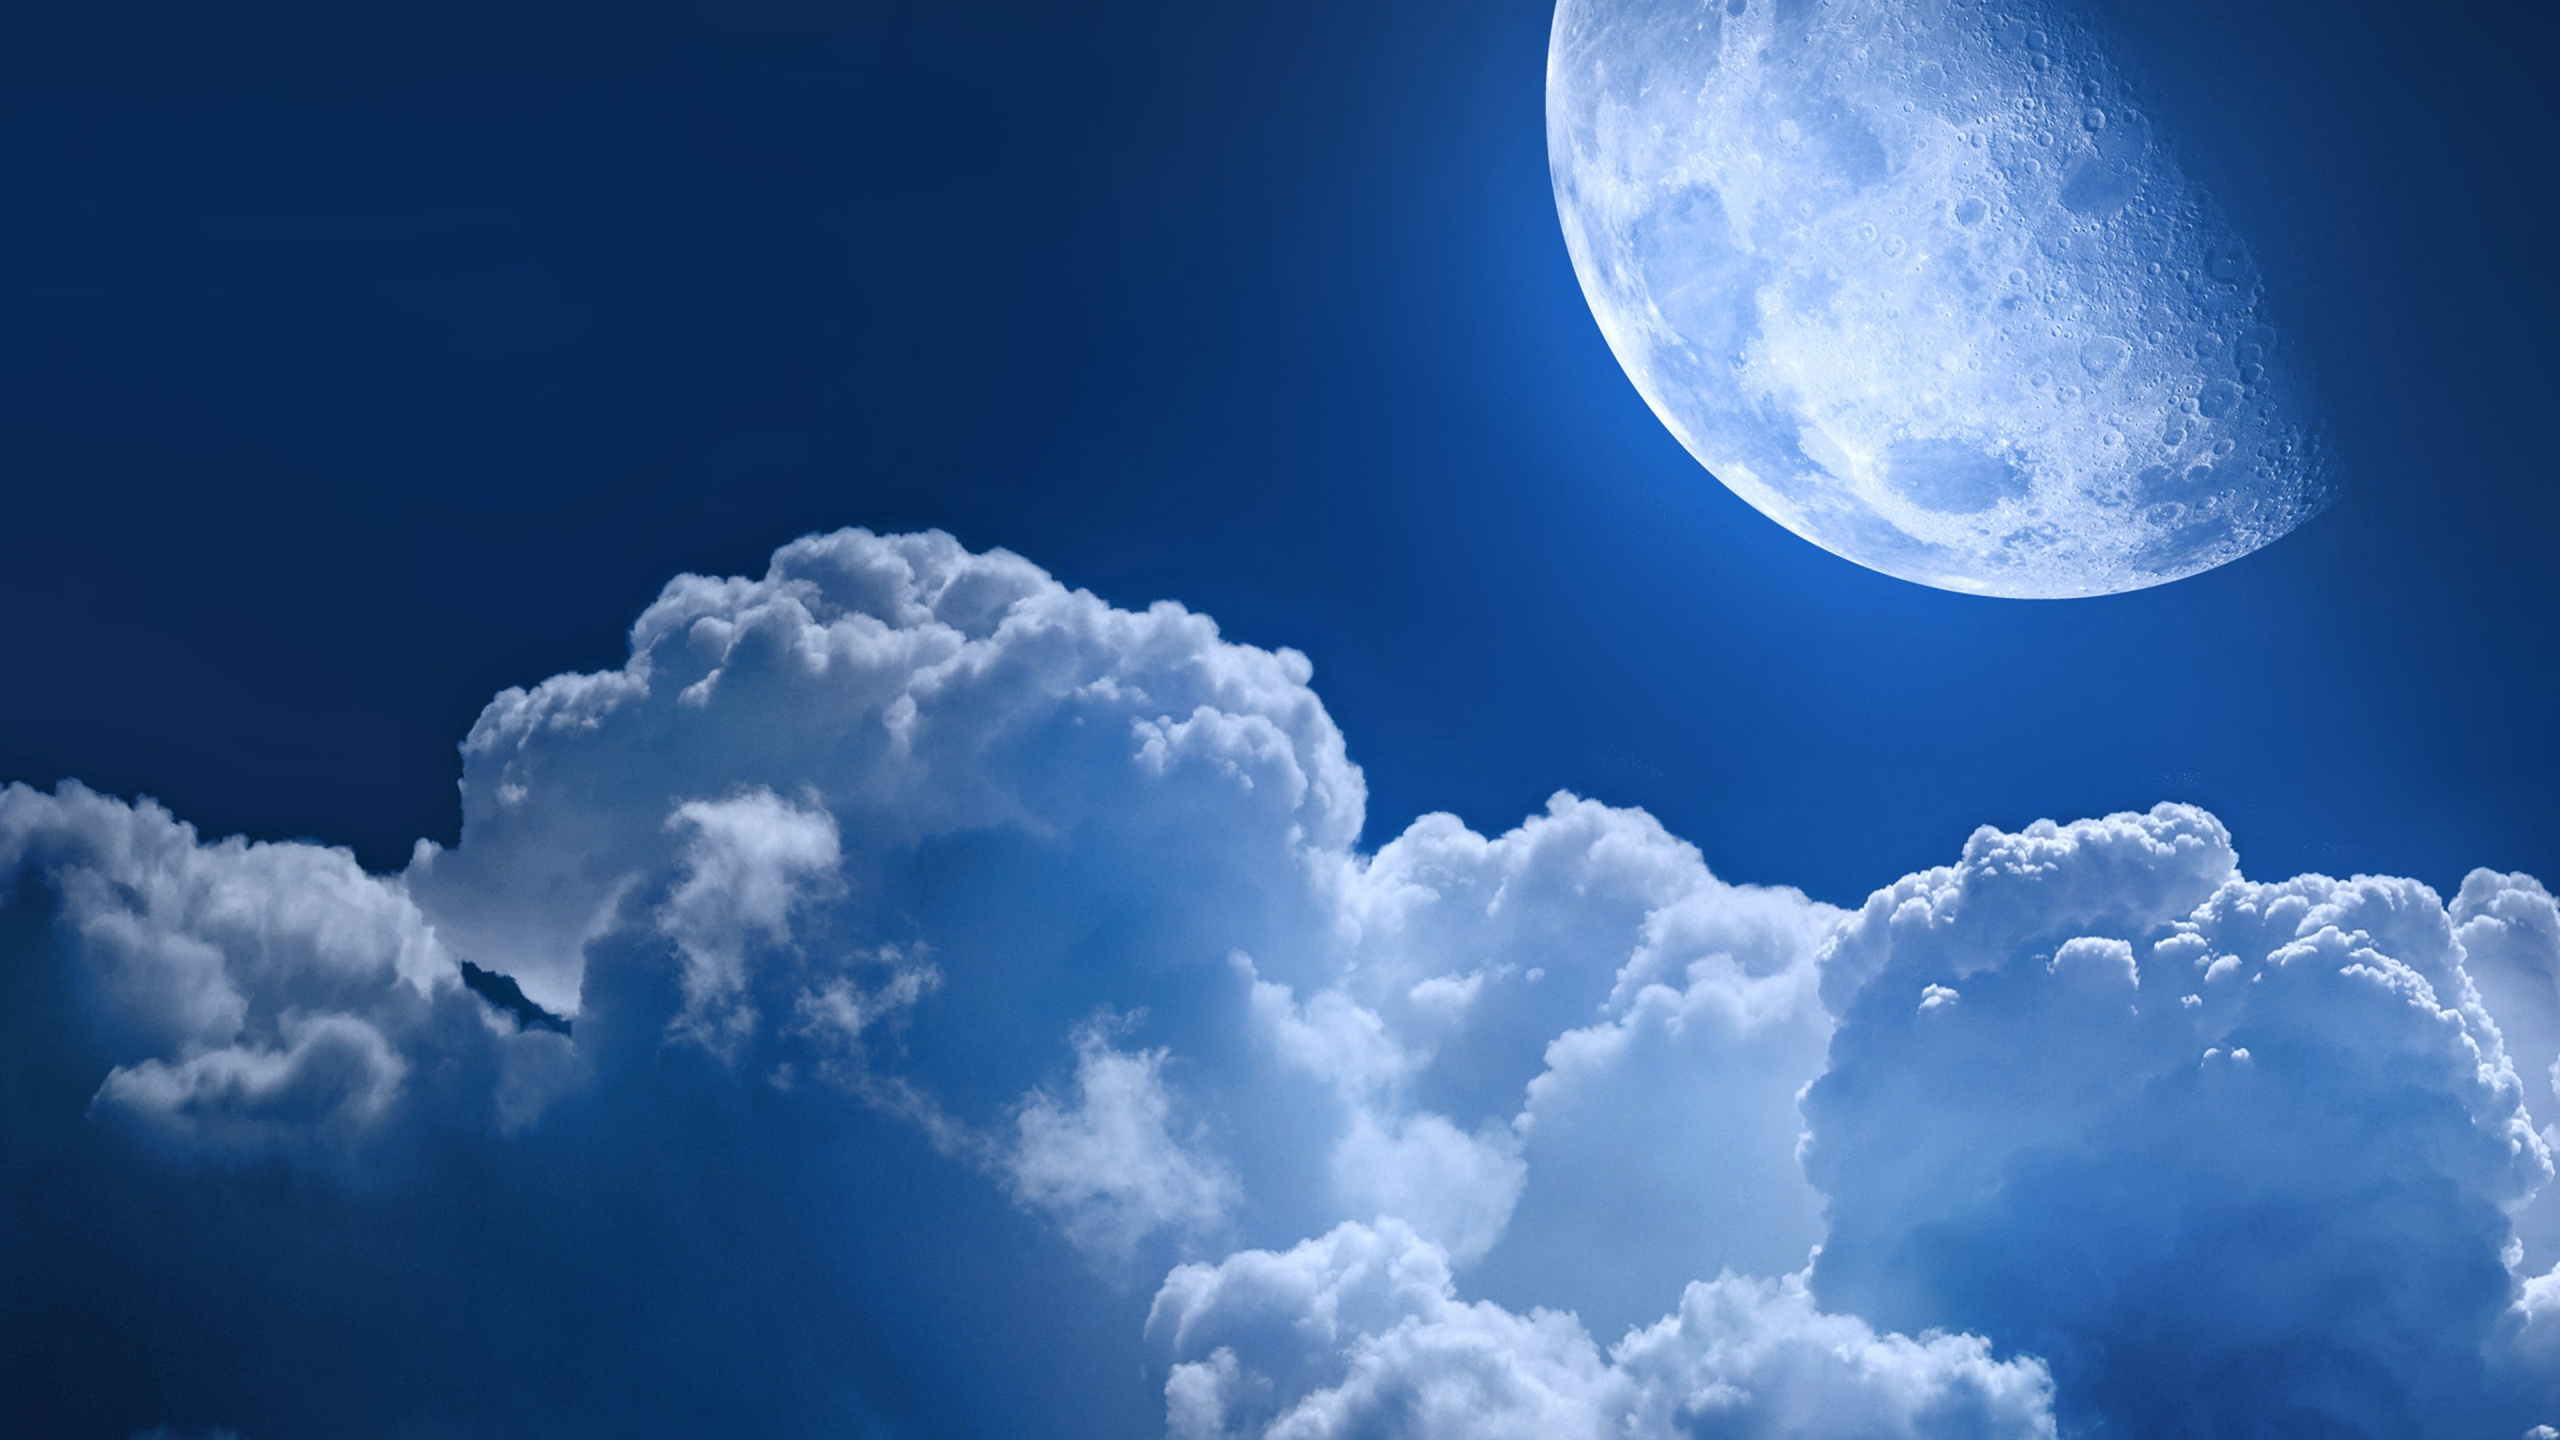 积云, 气氛, 月亮, 天空, 一天 壁纸 2560x1440 允许